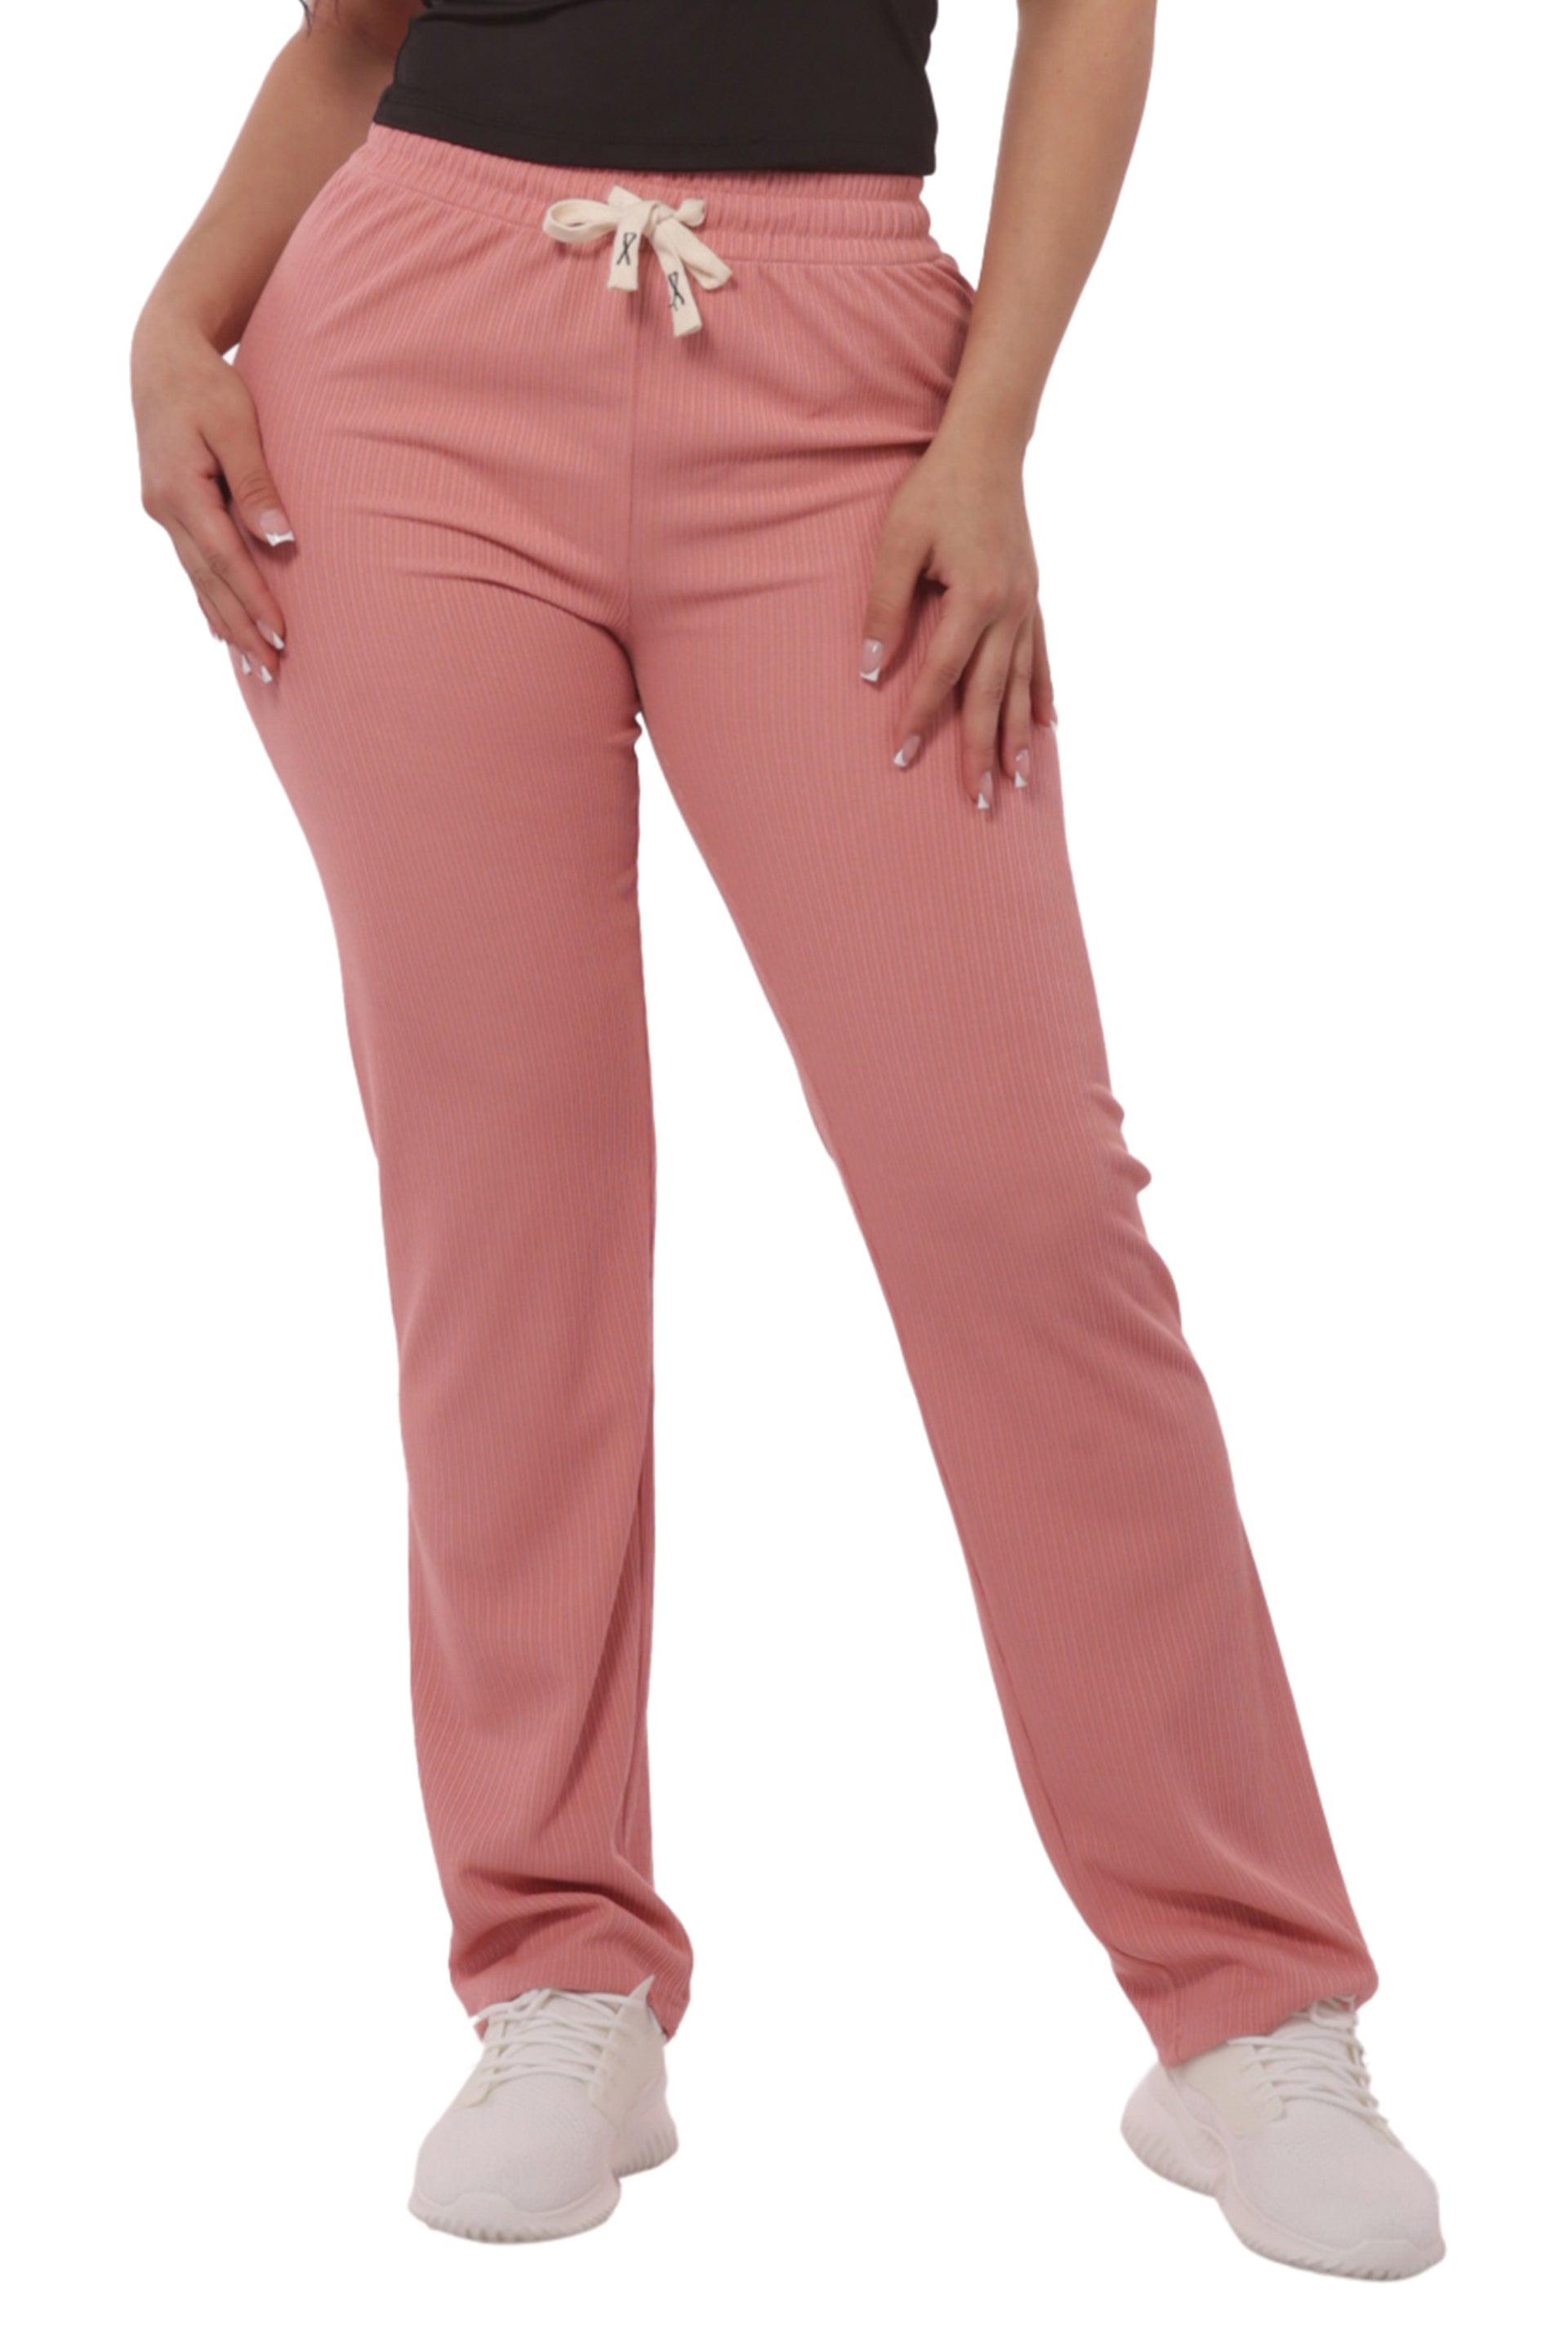 Rib Knit Straight Leg Pants With Drawstrings - Pink - SHOSHO Fashion